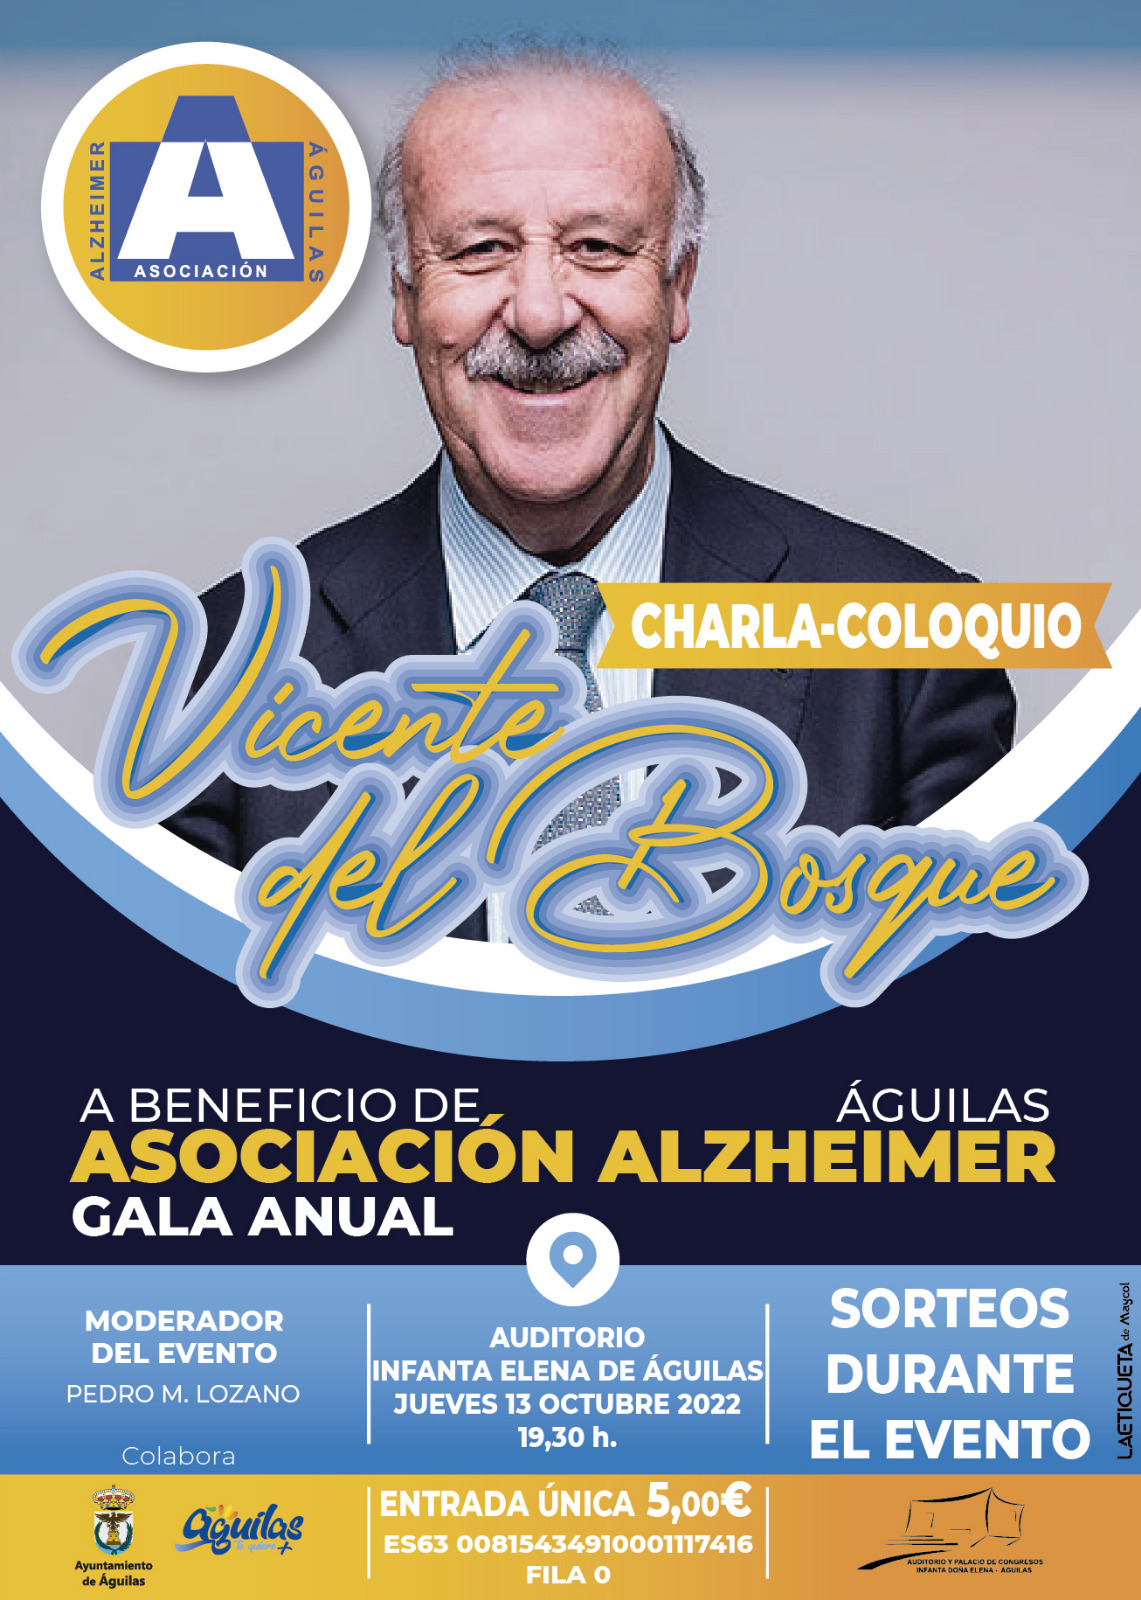 Charla - Coloquio Vicente del Bosque a Beneficio de la Asociación Alzheimer Águilas